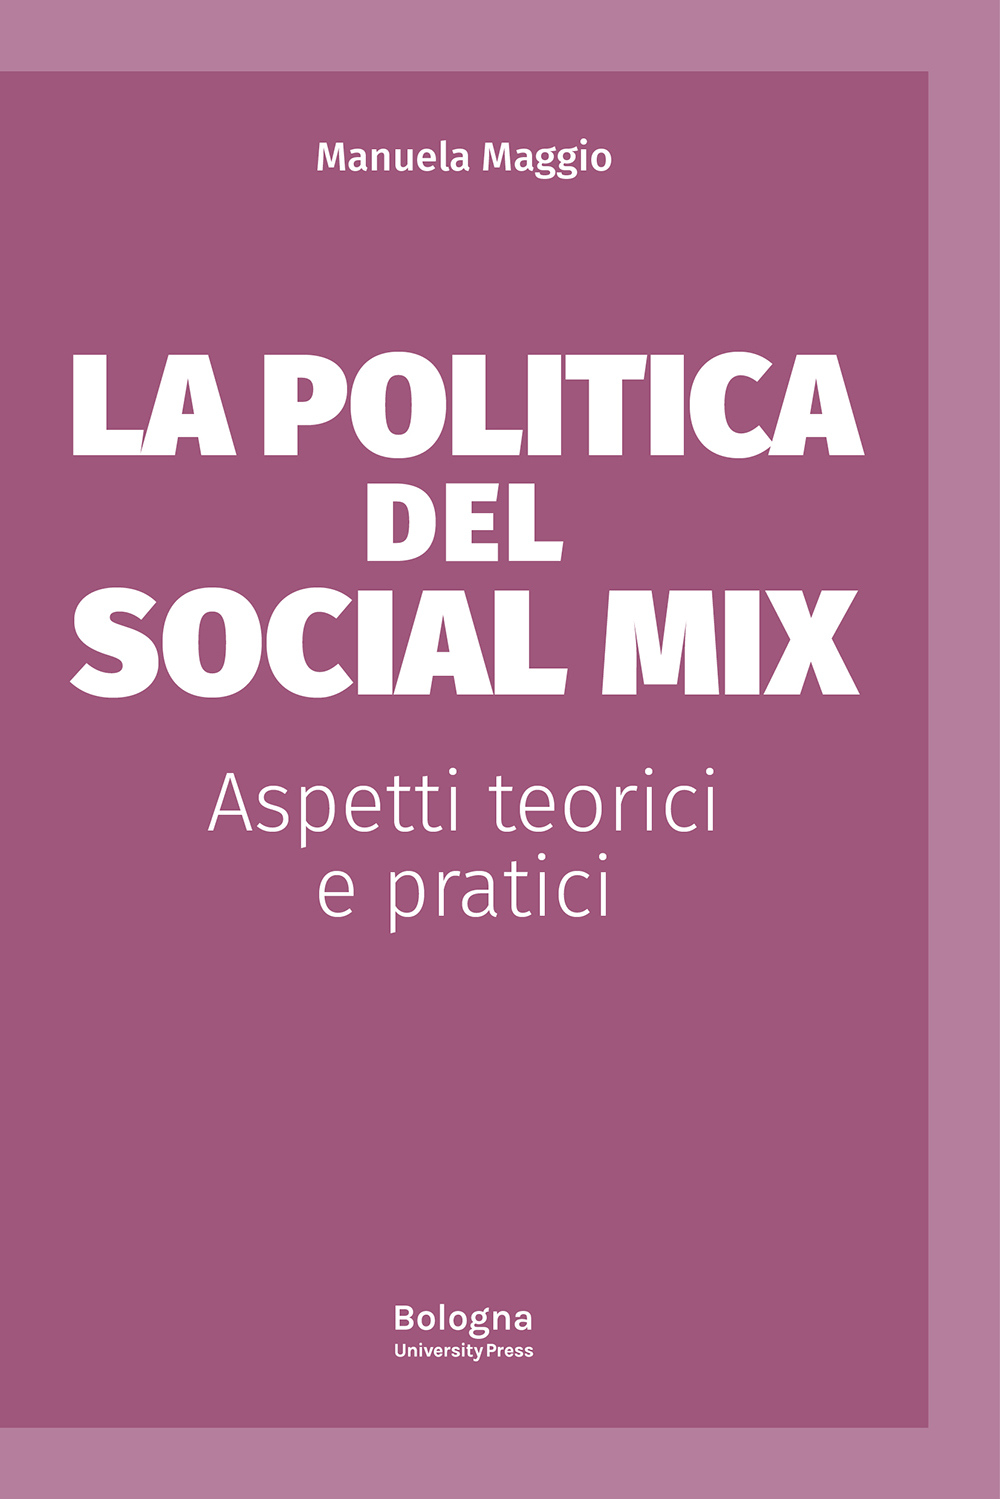 La politica del social mix - Bologna University Press